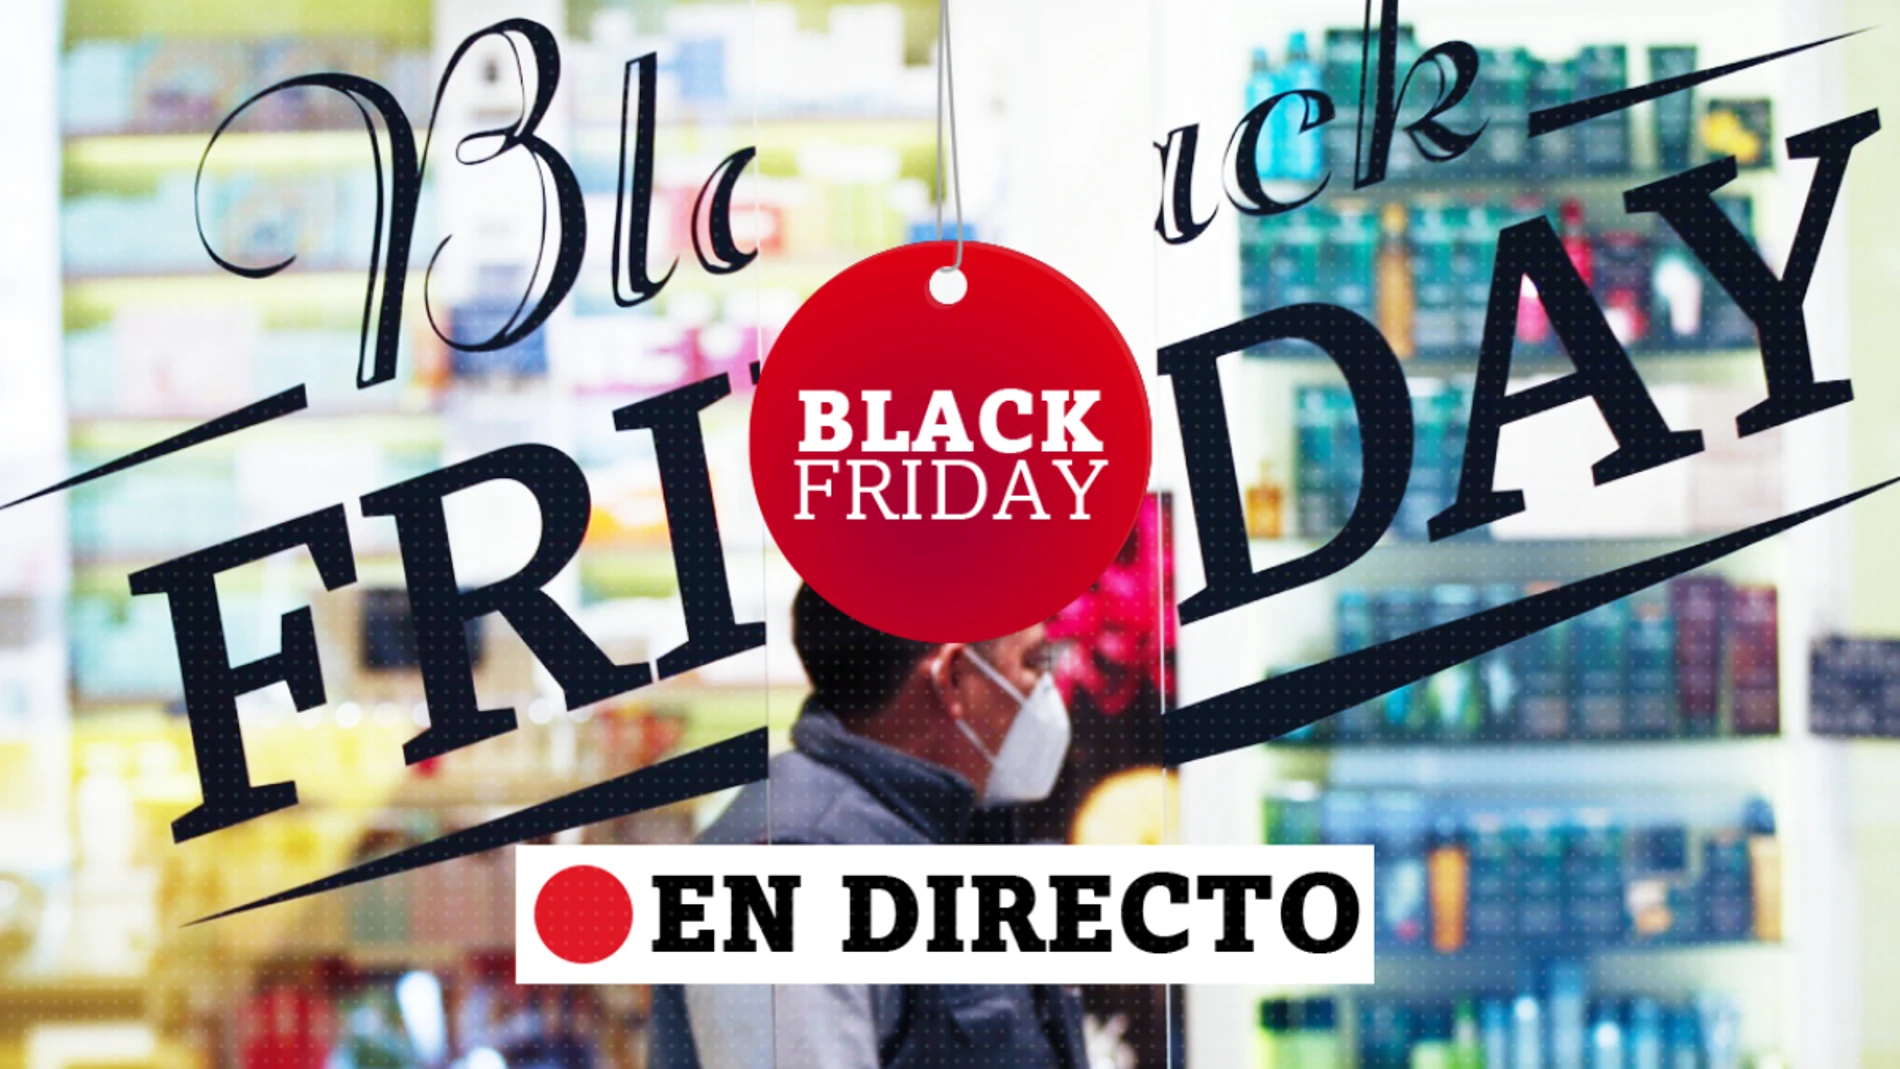 Black Friday 2020, en directo | Ofertas irrepetibles en El Corte Inglés, Amazon y Zara